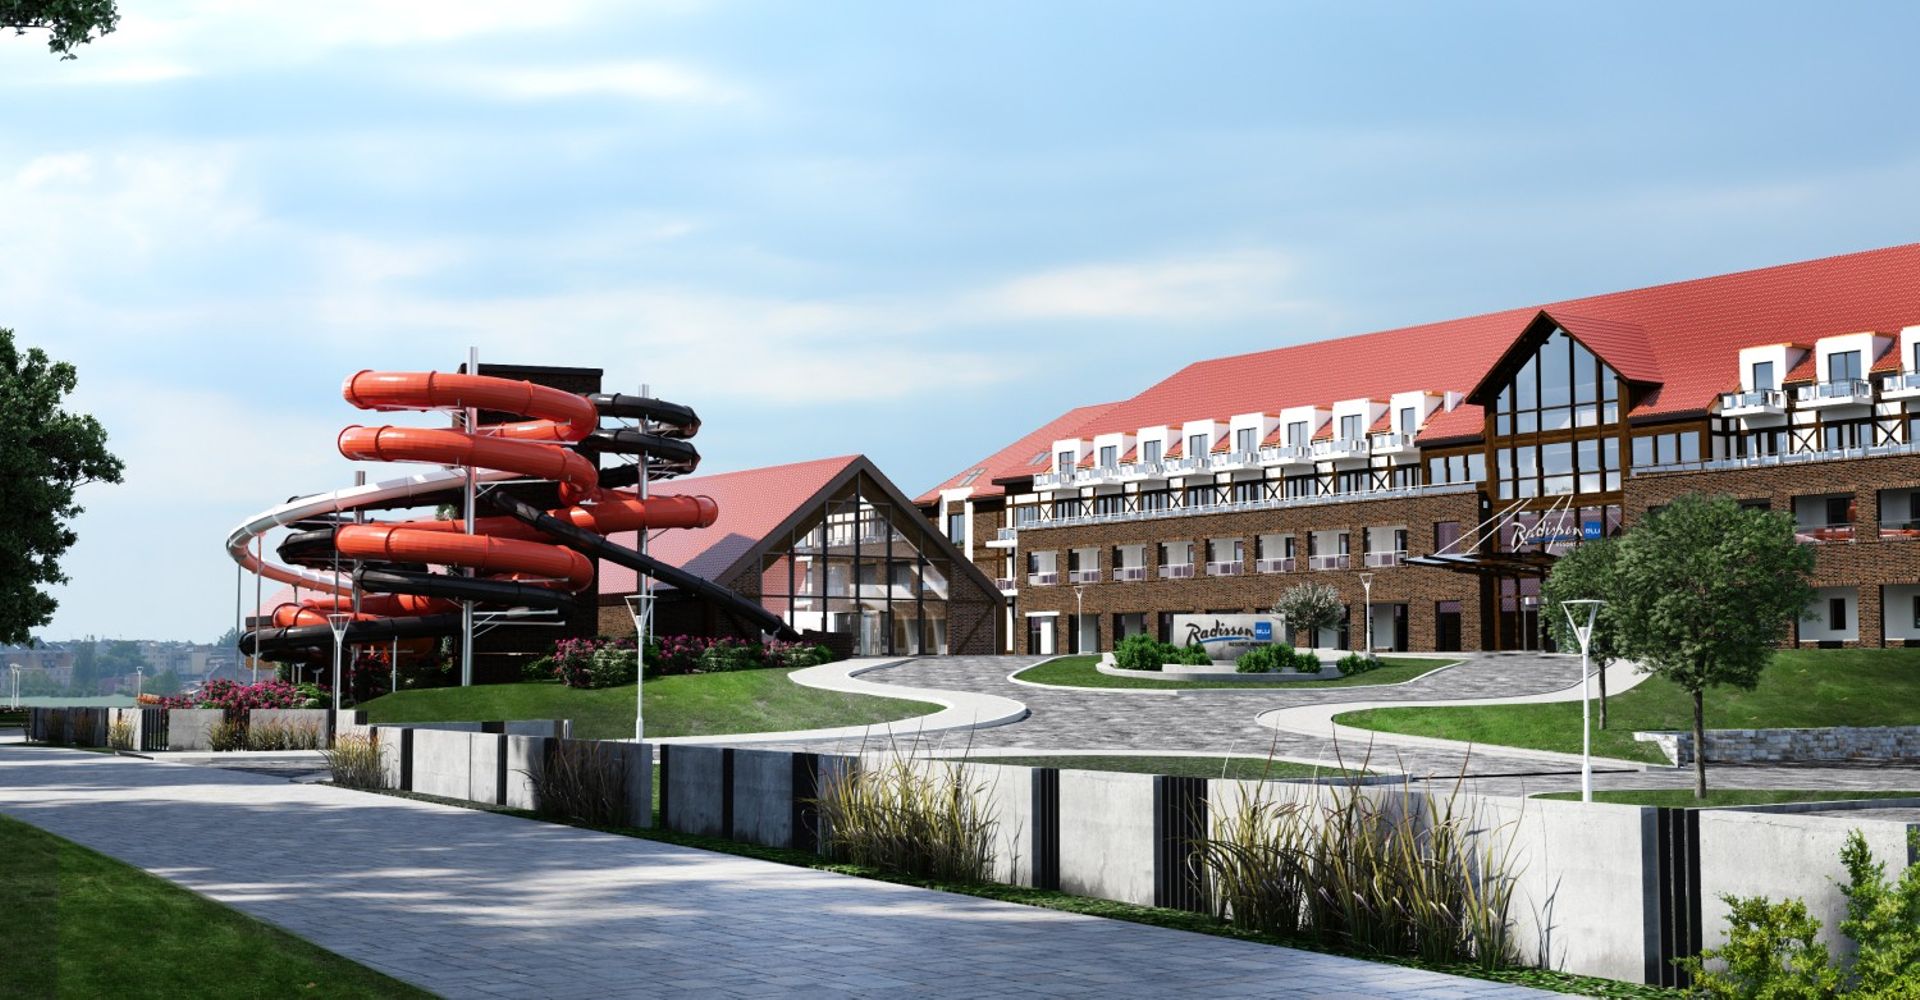  Nowy hotel Radisson Blu Resort stanie w Ostródzie